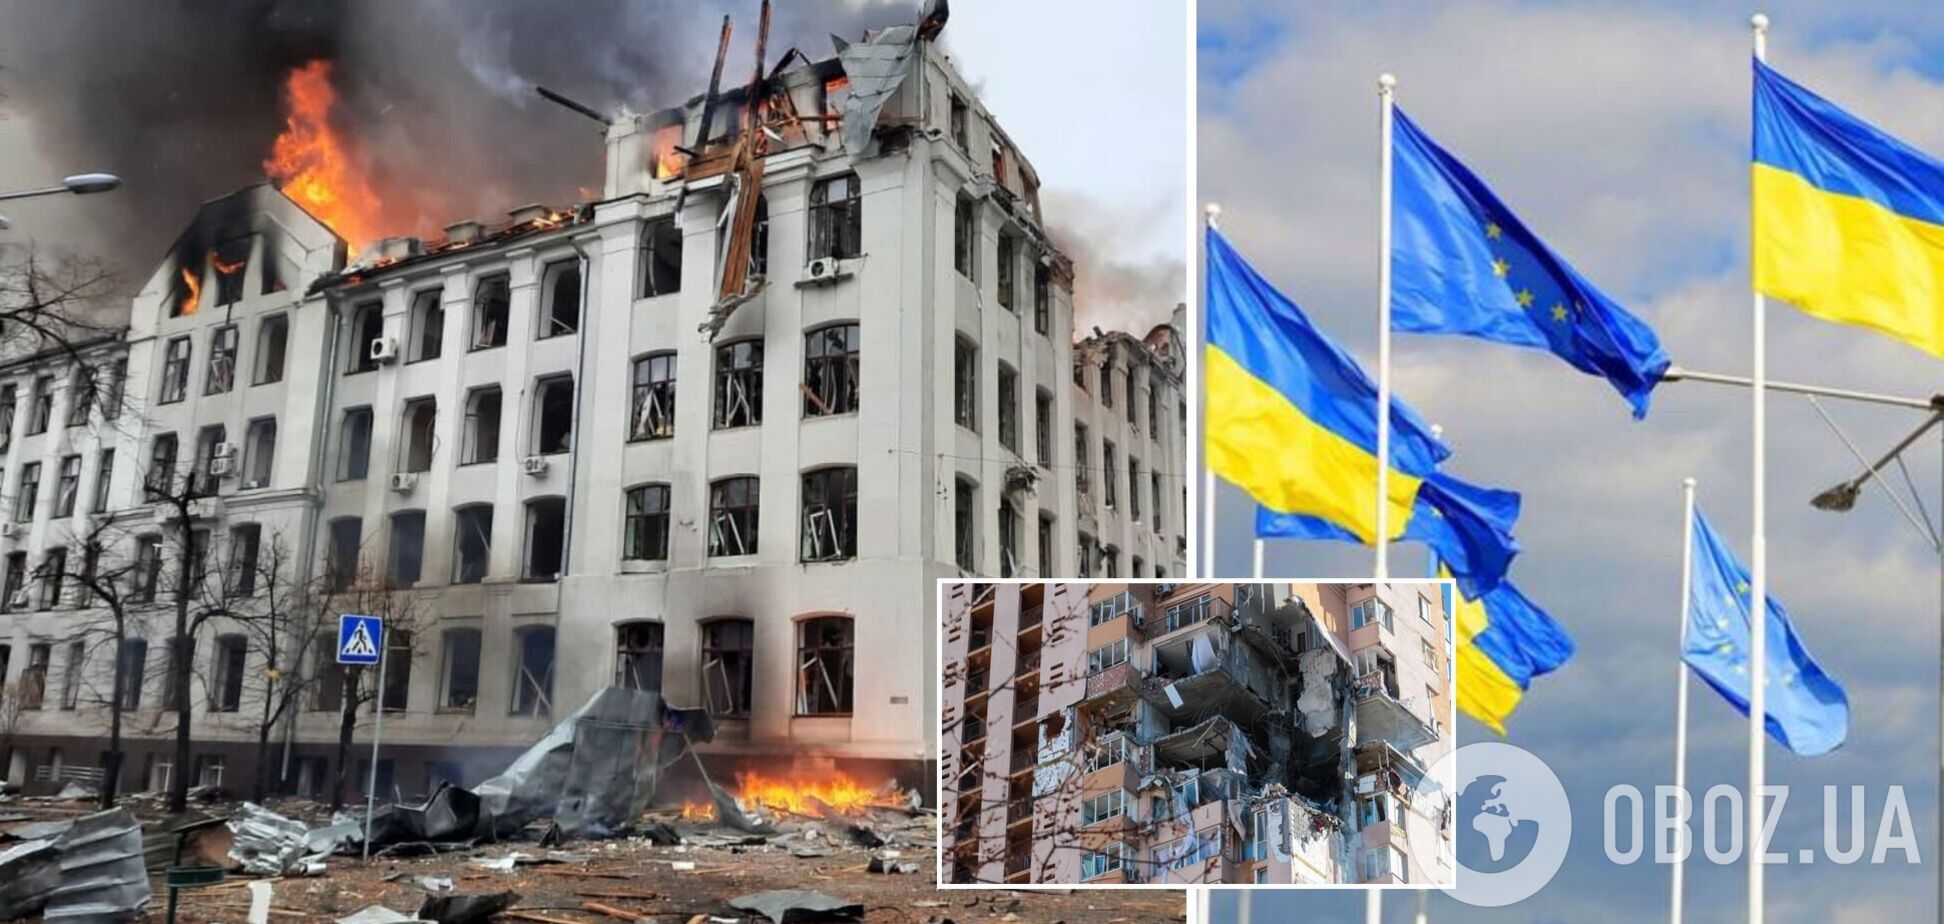 Євросоюз створить Трастовий фонд солідарності для допомоги Україні у відновленні країни після війни